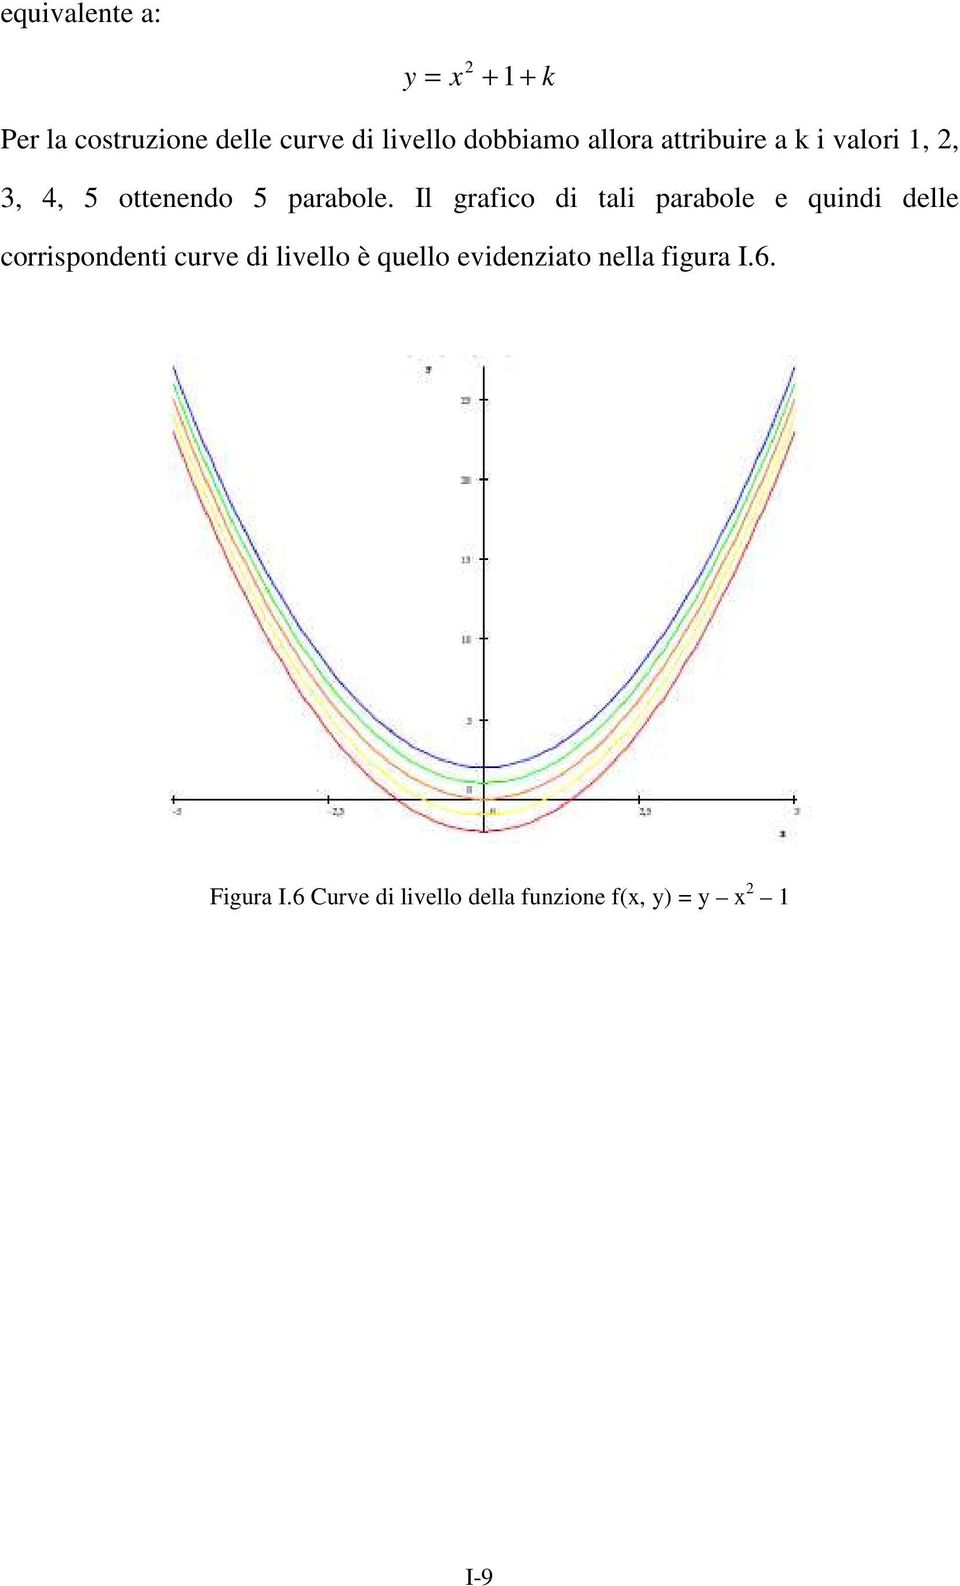 Il grafico di tali parabole e quindi delle corrispondenti curve di livello è